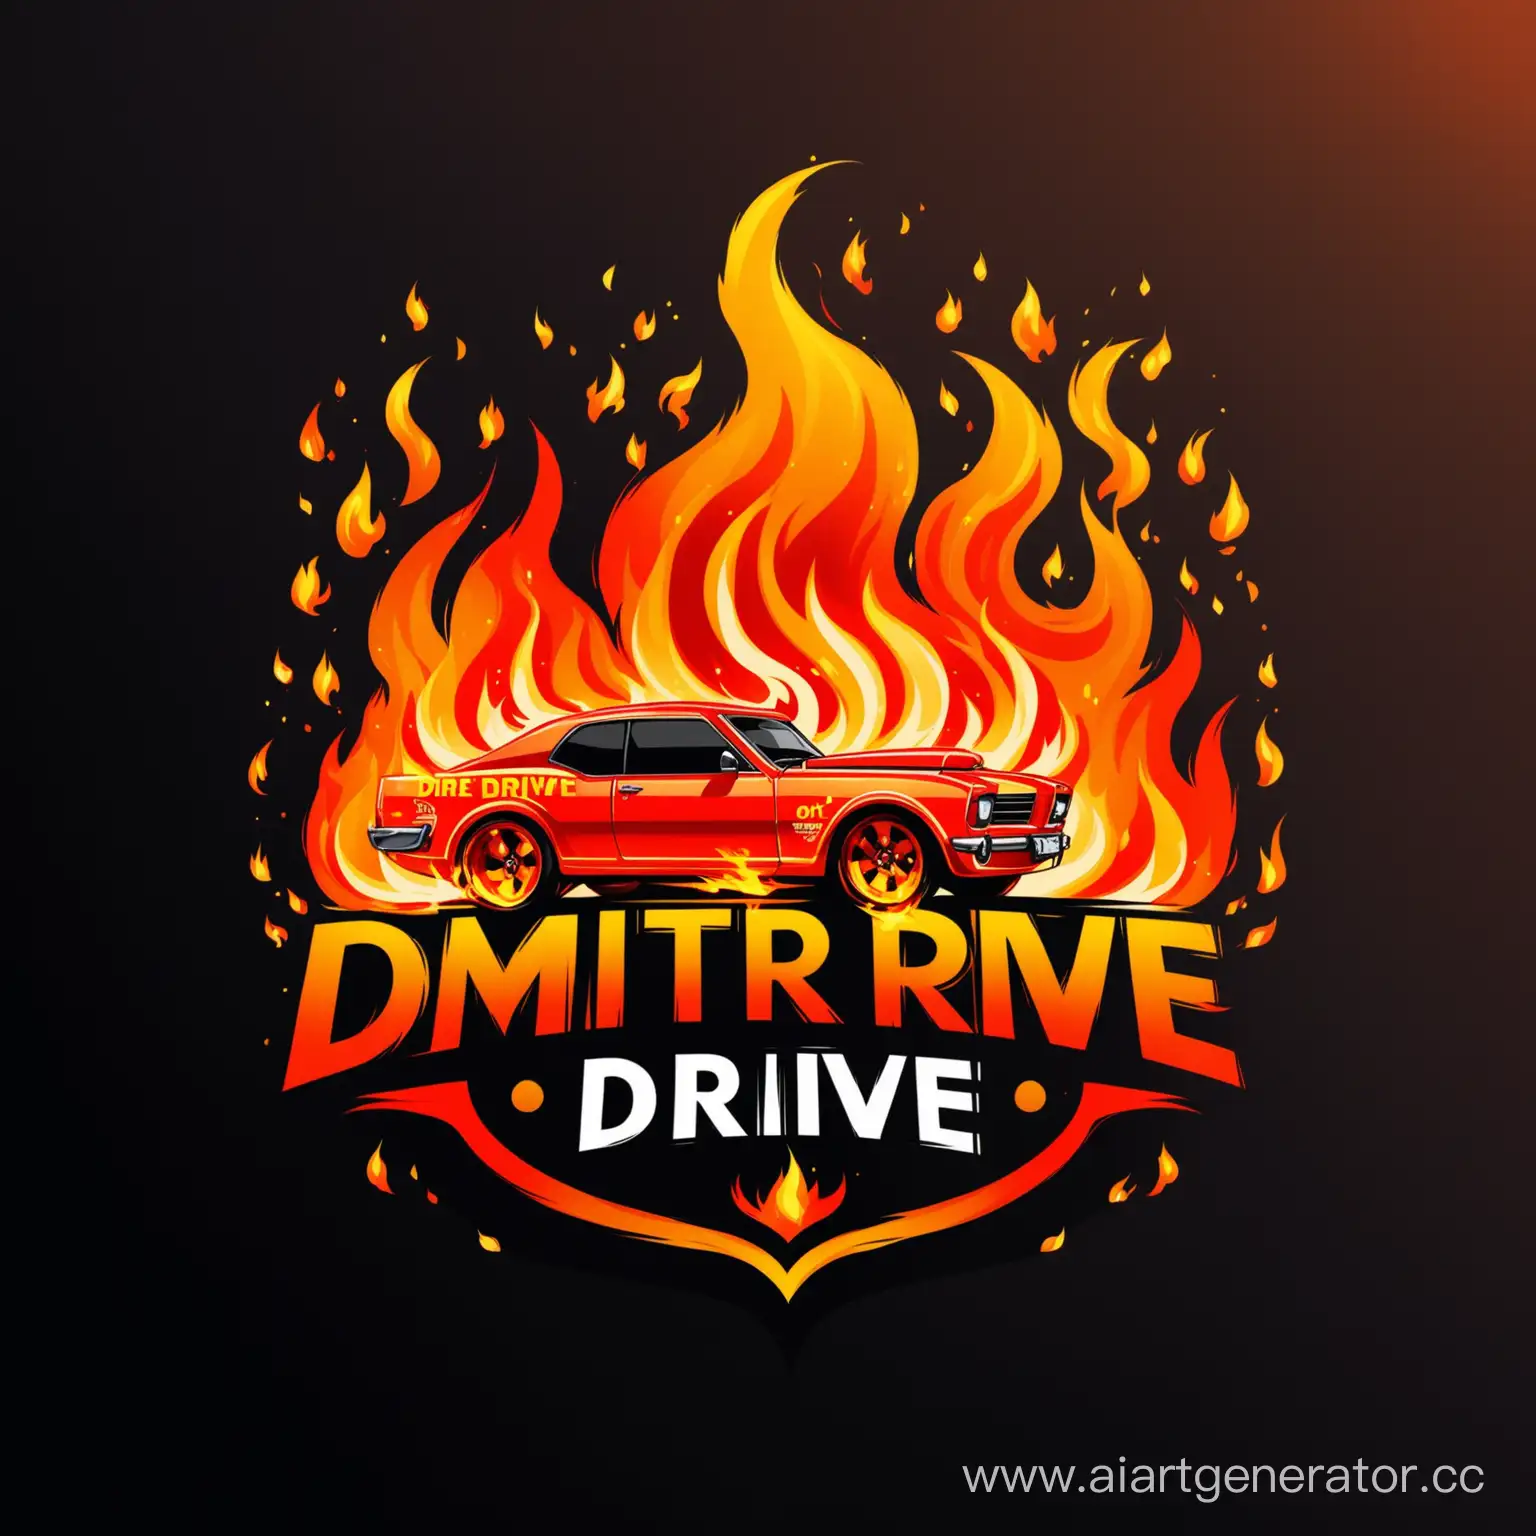 логотип для компании по детейлингу машин "Dmitriy Drive" с огнем вместо буквы i в слове Drive или полностью в огне